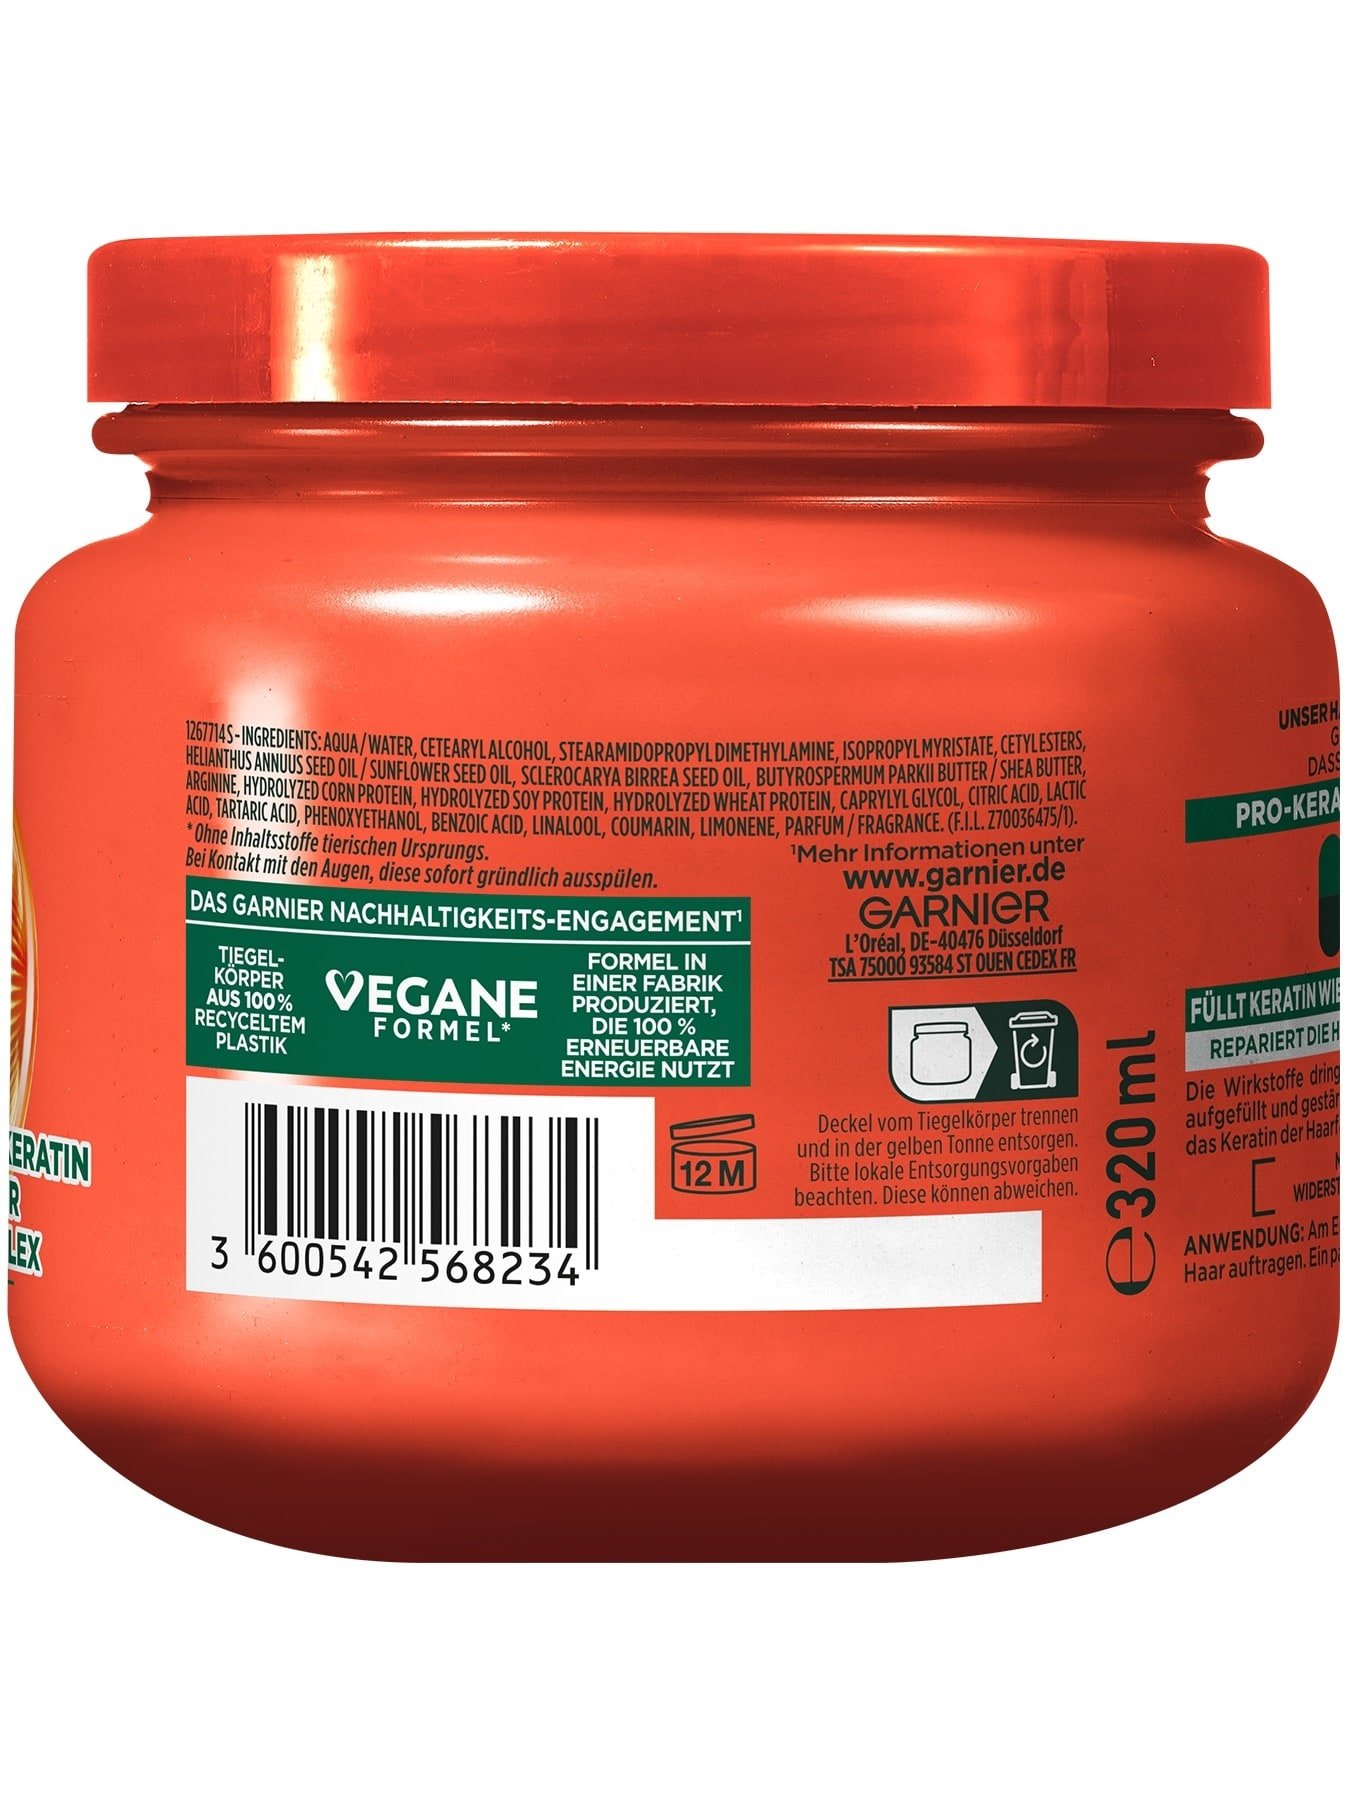 Fructis Schadenlöscher Pro-Keratin Hair Bomb - Produkt Details